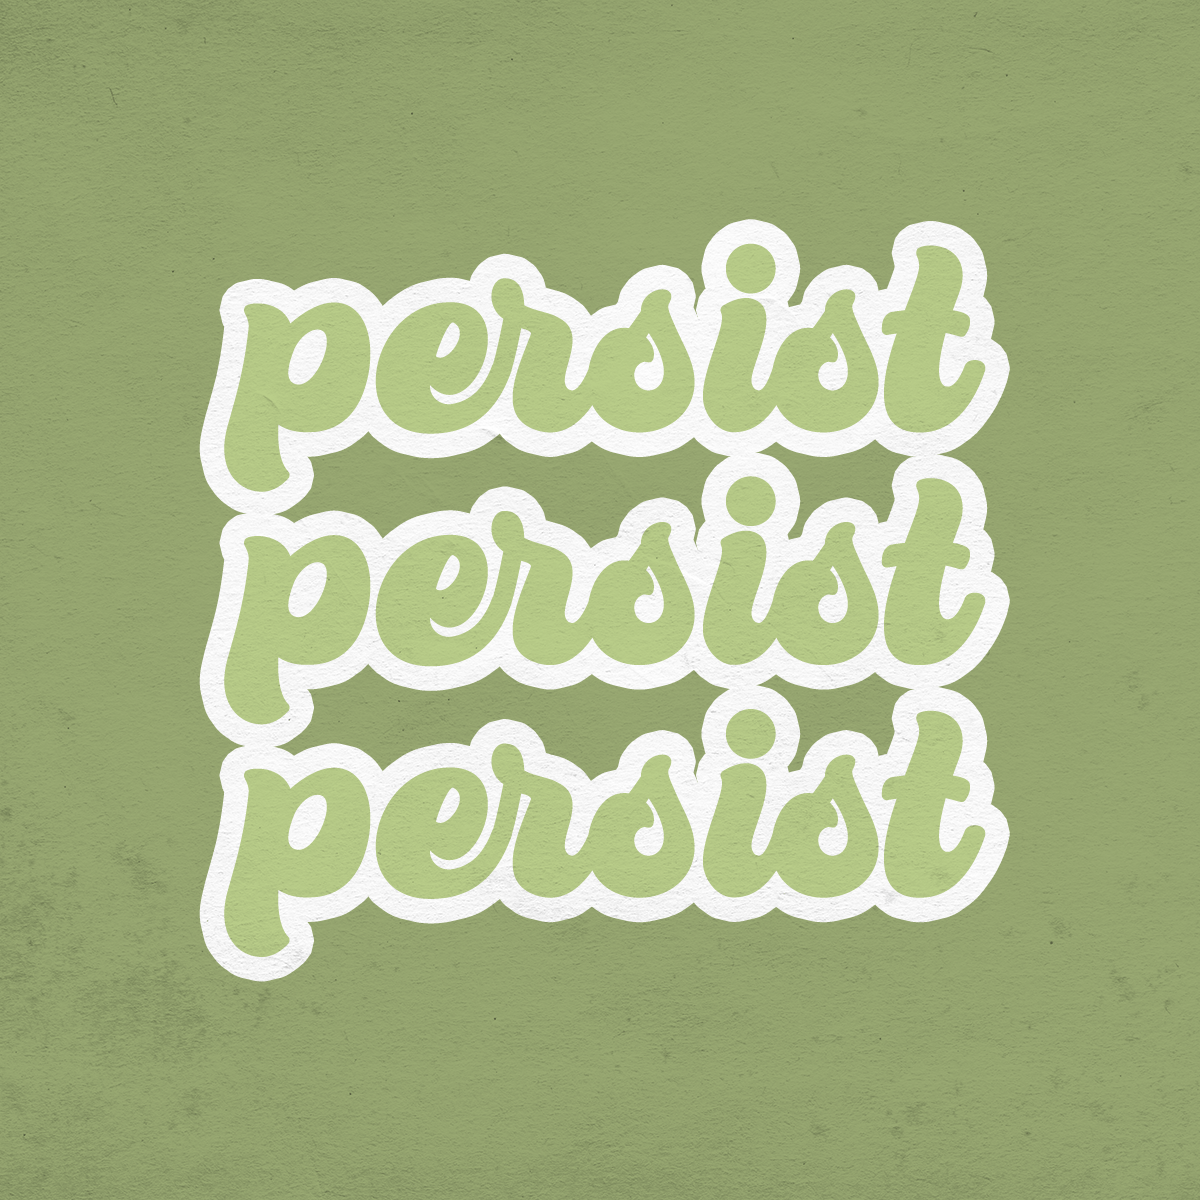 Persist, Persist, Persist graphic